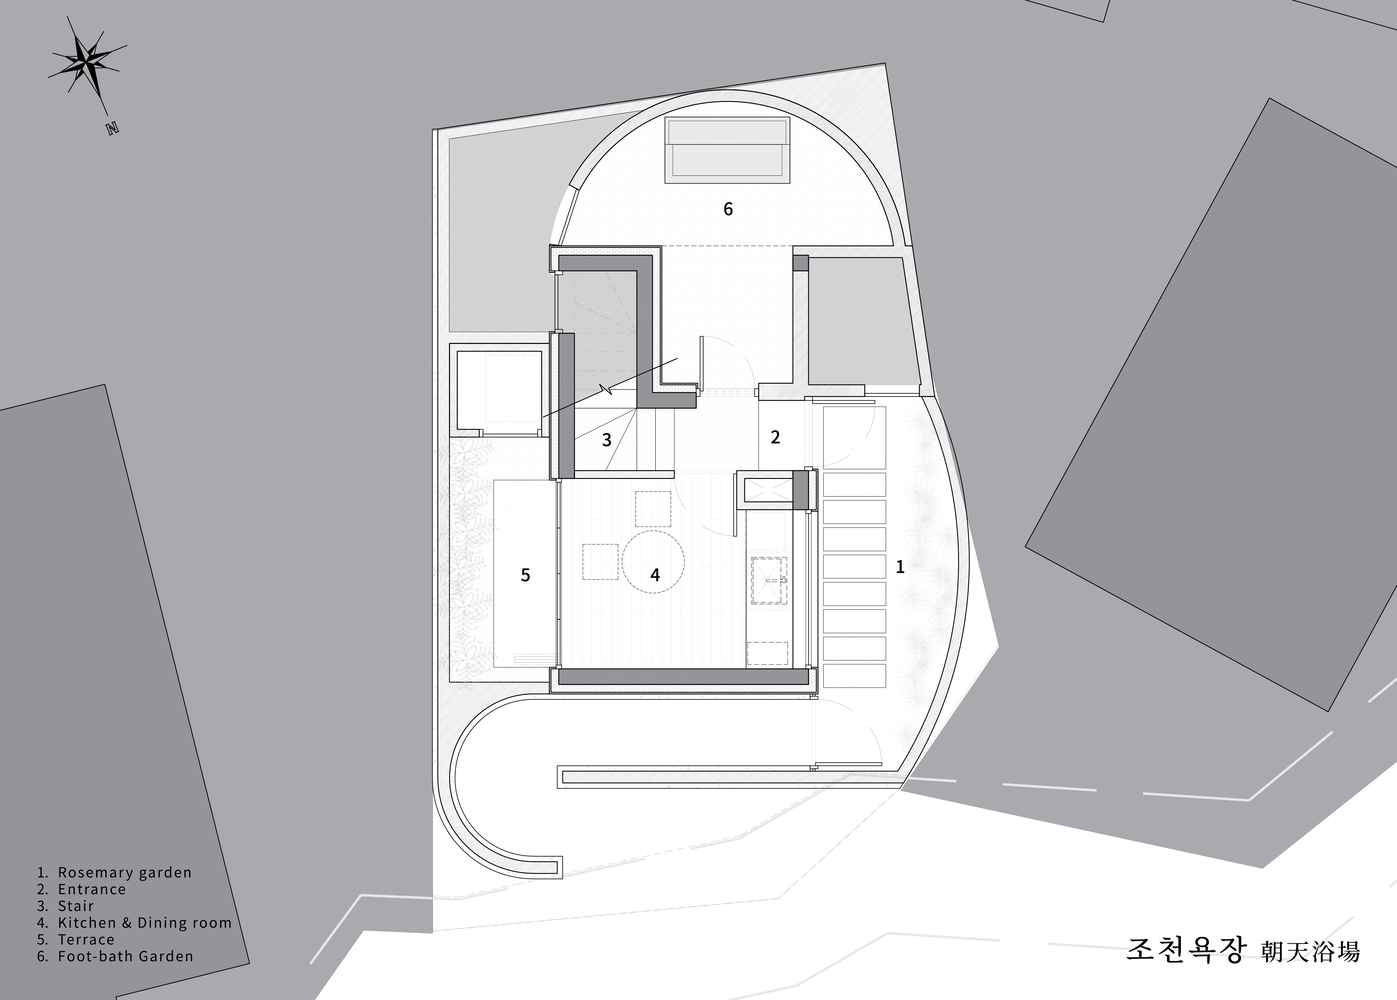 Atelier ITCH,浴场设计案例,韩国,济州岛,朝天浴场,小型浴场